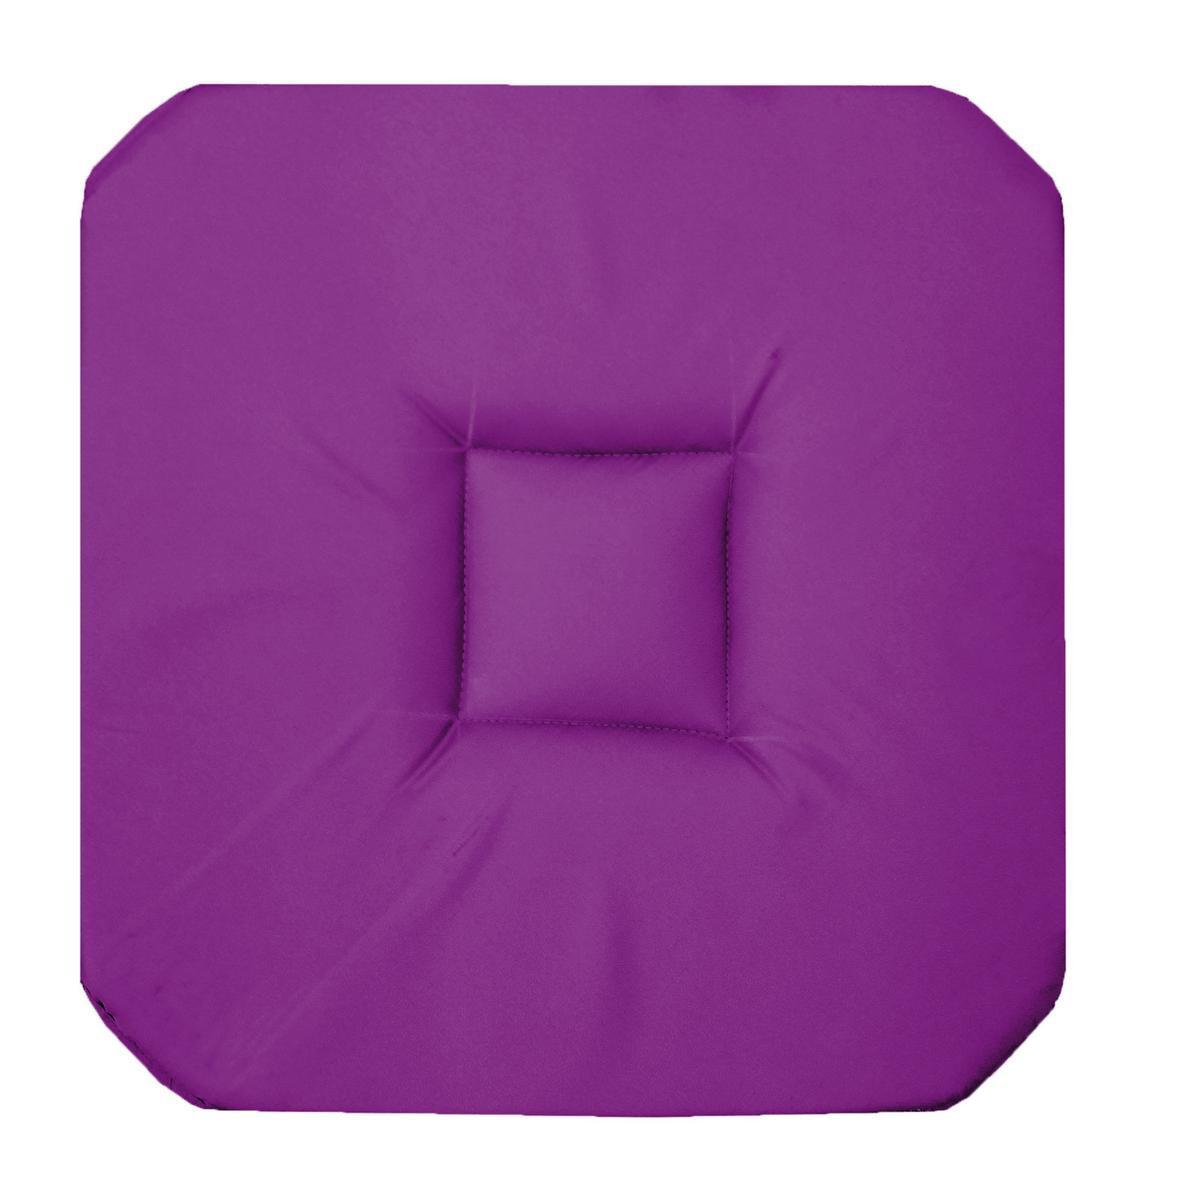 Galette de chaise - 36 x 36 x H 3,5 cm - Violet prune